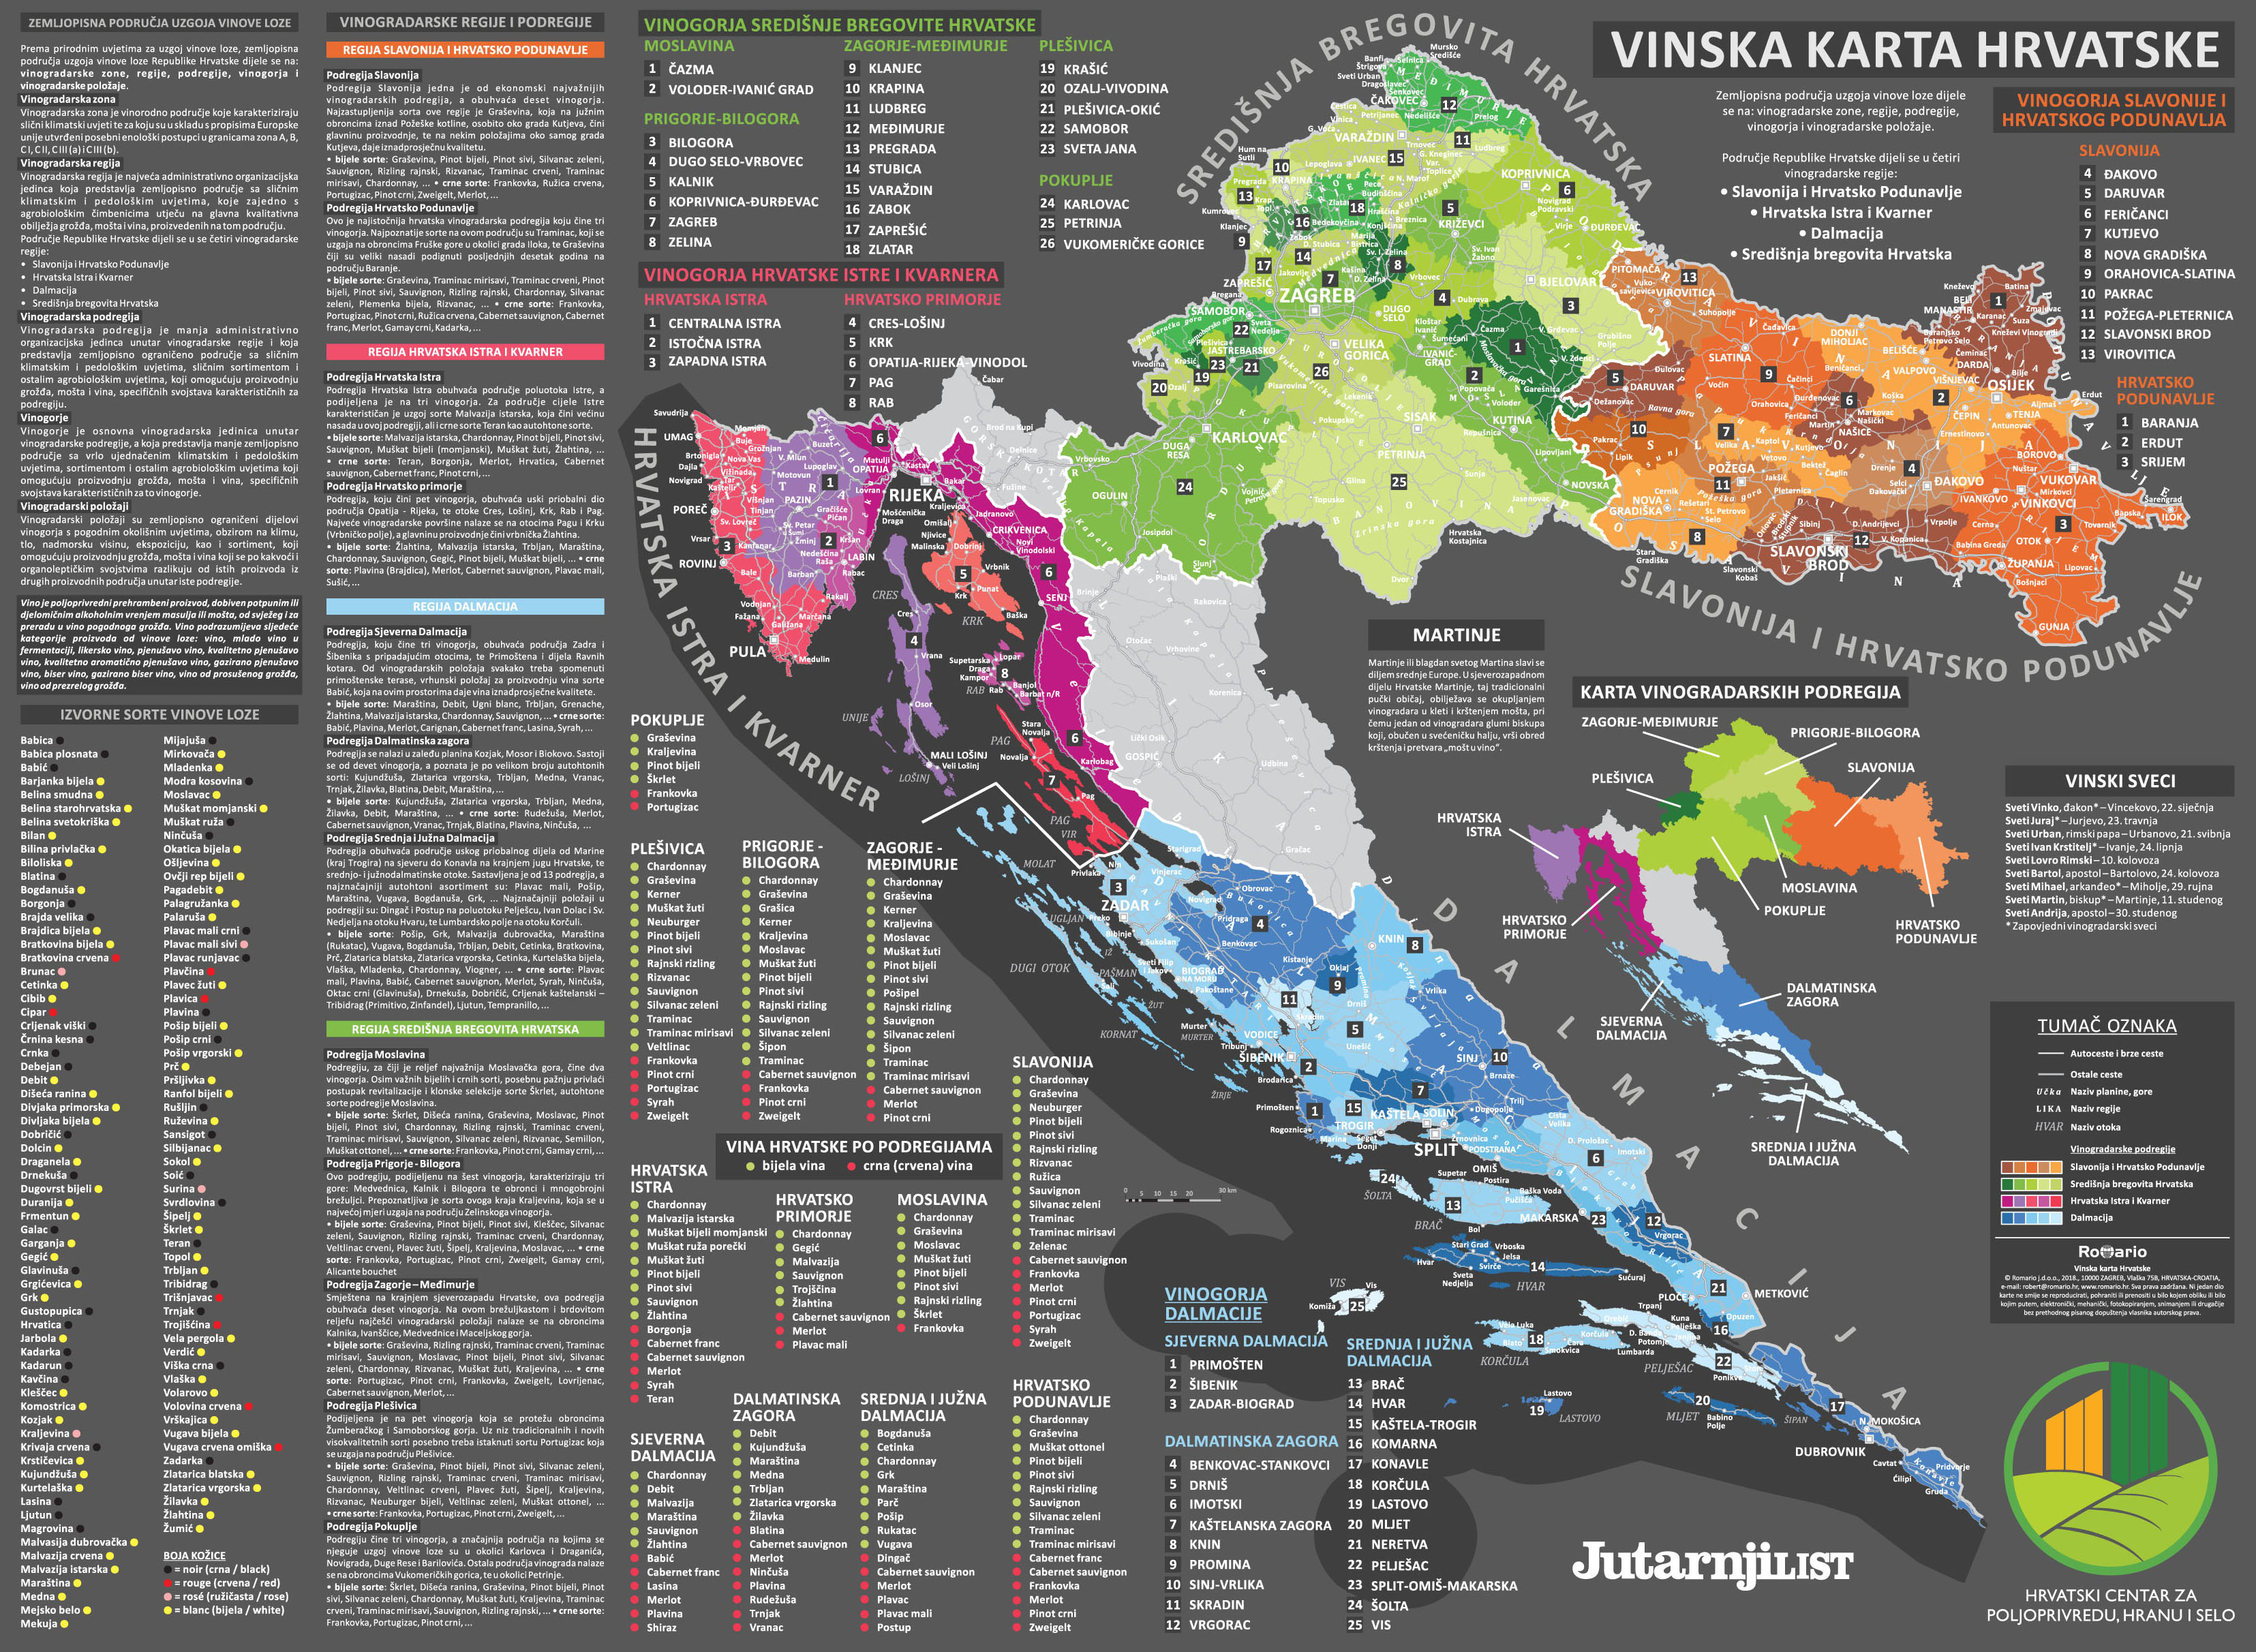 geografska karta hrvatske i slovenije